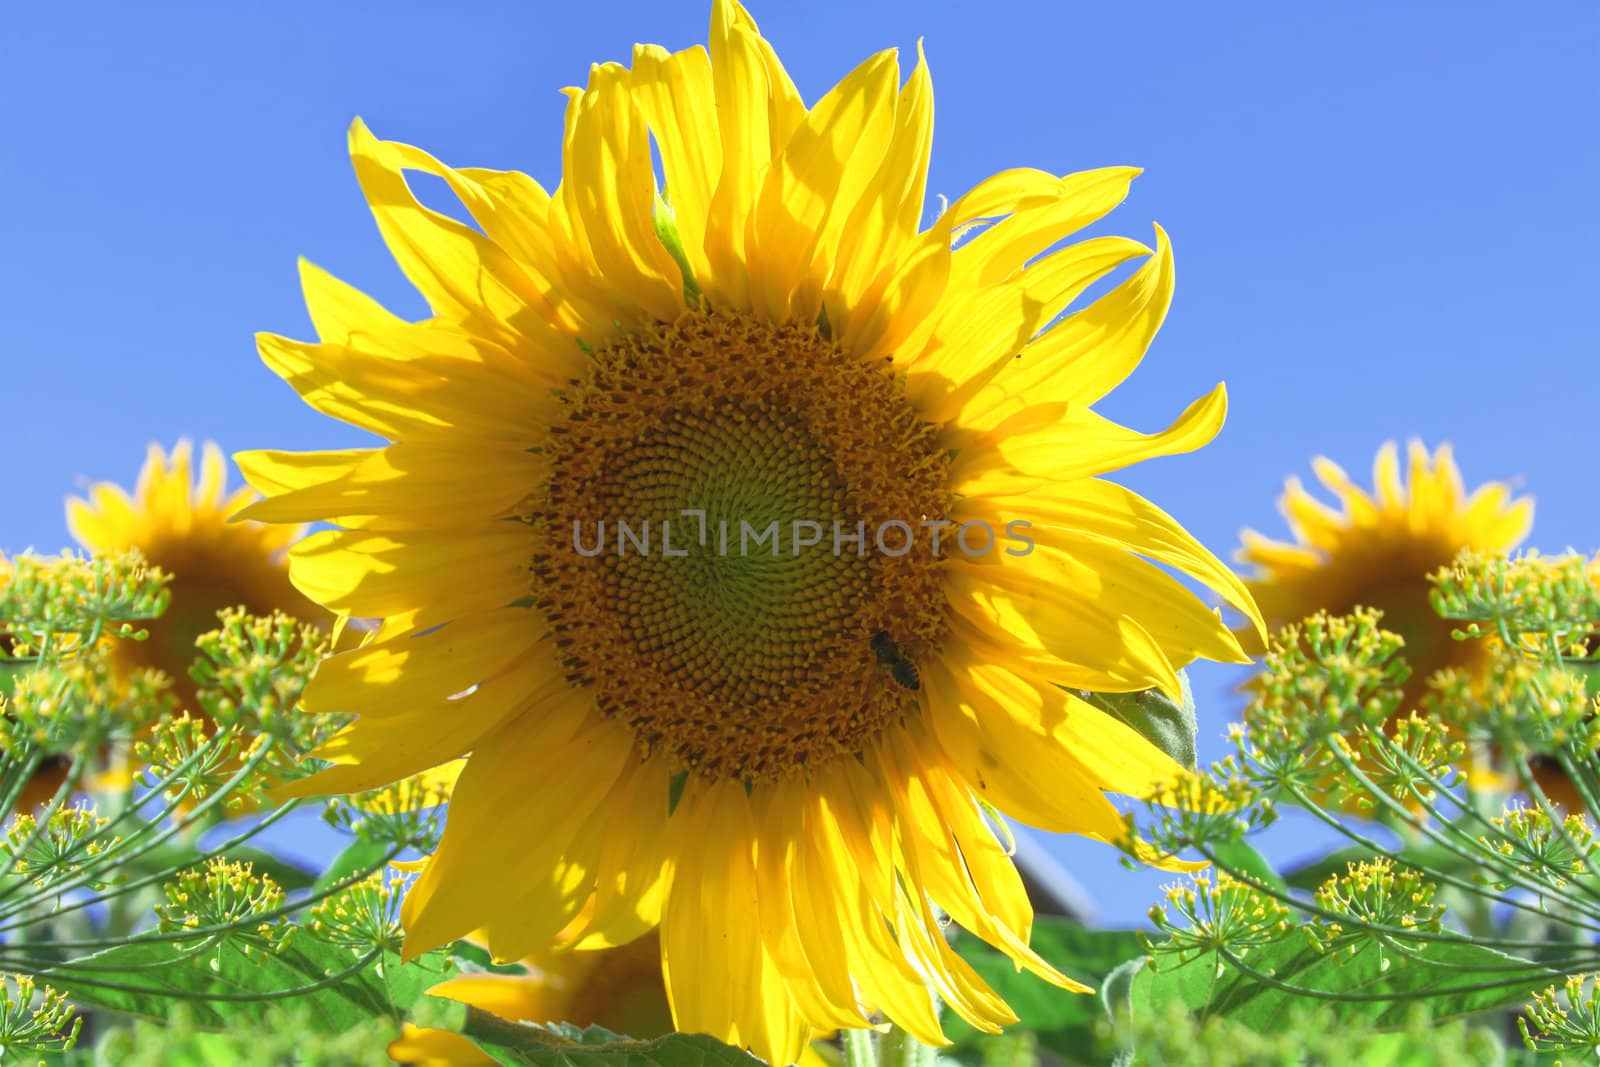 sunflower by Dikar